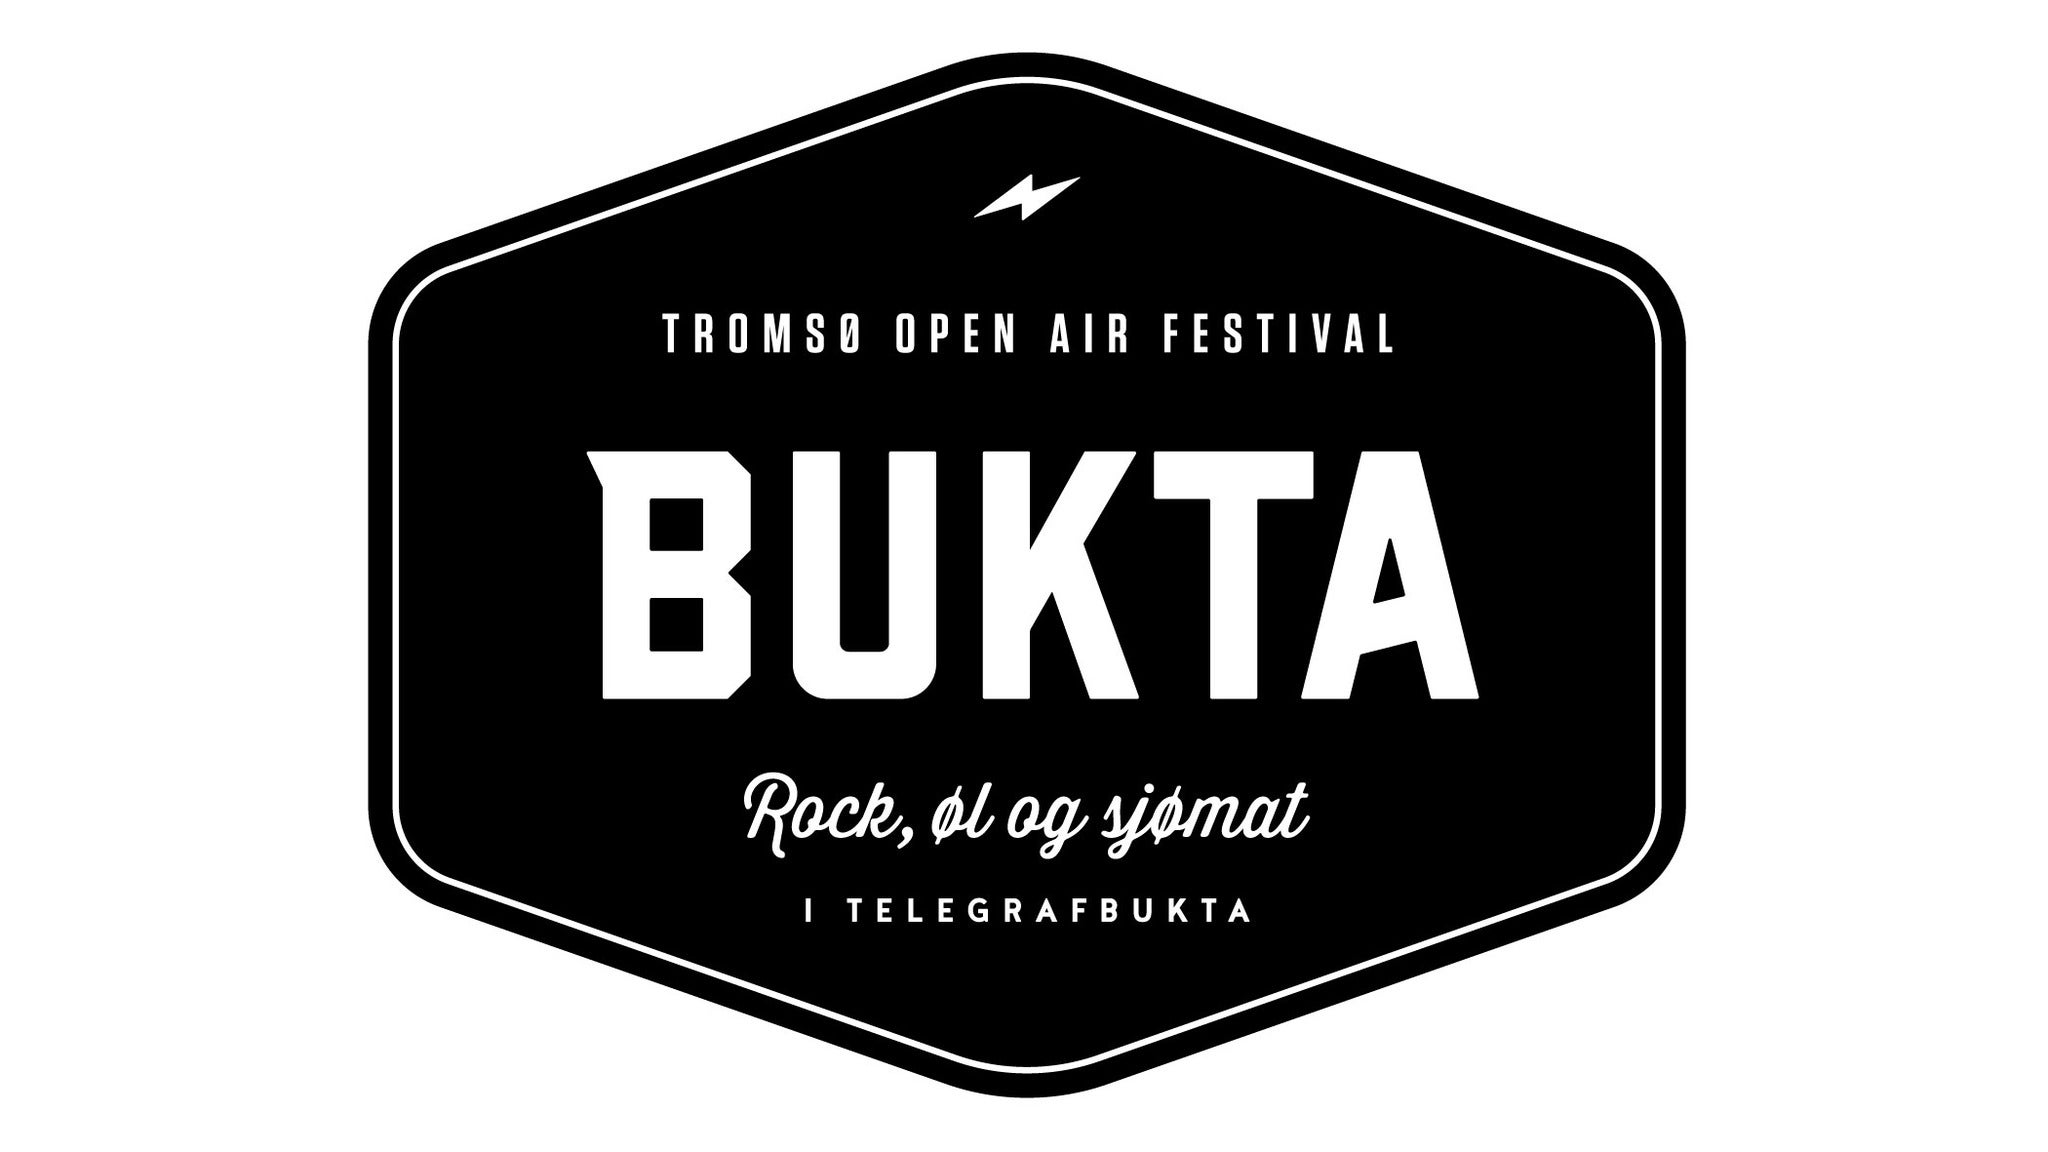 Bukta - Troms Open Air Festival presale information on freepresalepasswords.com